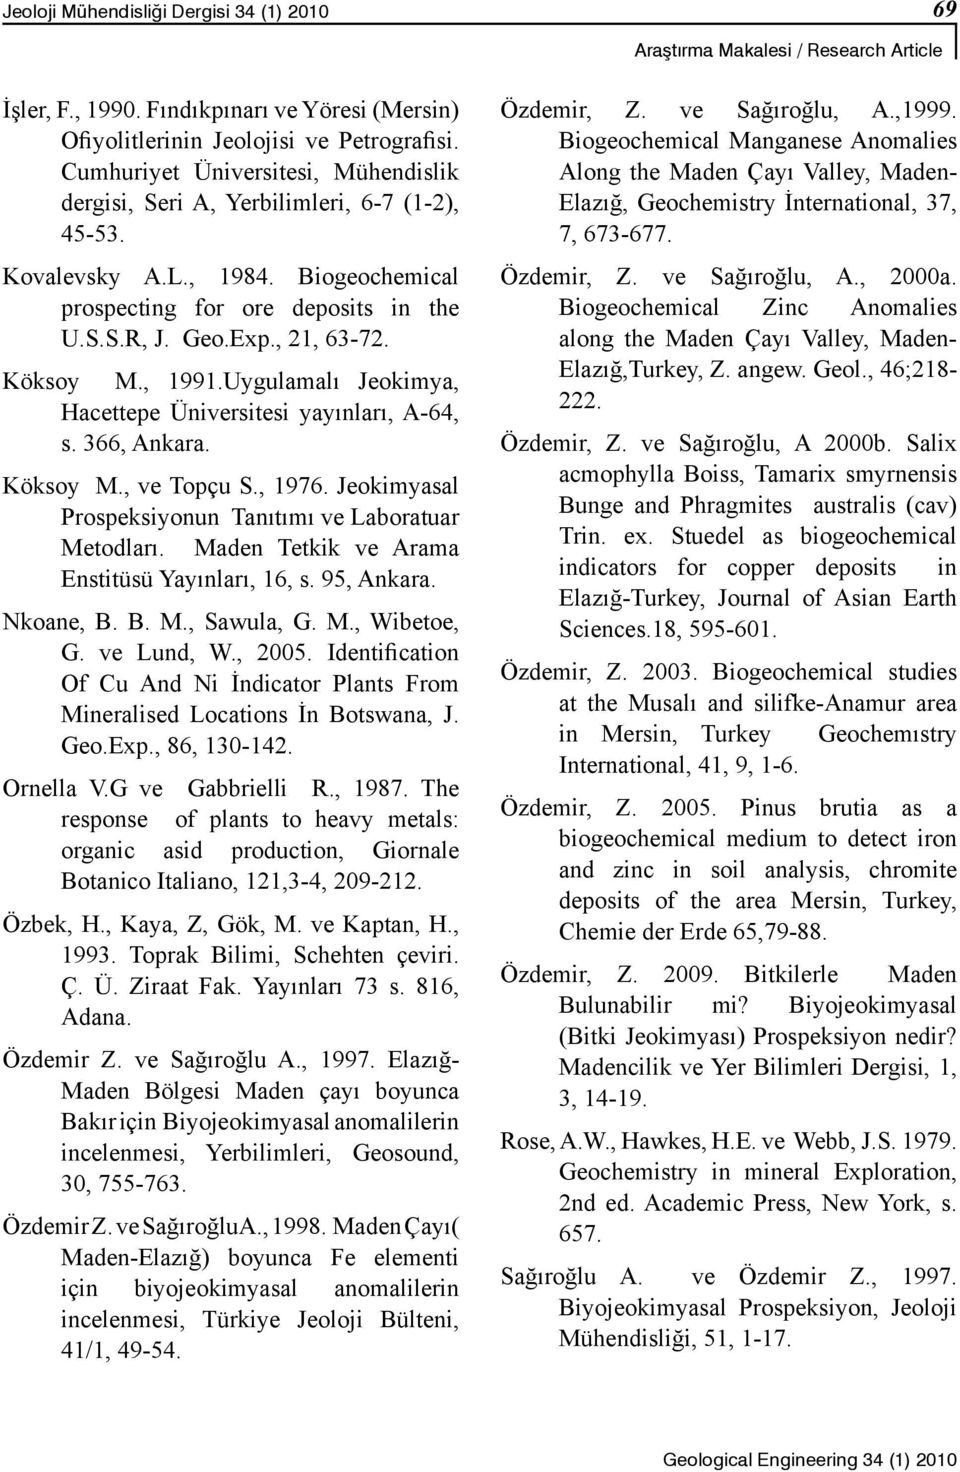 Köksoy M., 1991.Uygulamalı Jeokimya, Hacettepe Üniversitesi yayınları, A-64, s. 366, Ankara. Köksoy M., ve Topçu S., 1976. Jeokimyasal Prospeksiyonun Tanıtımı ve Laboratuar Metodları.